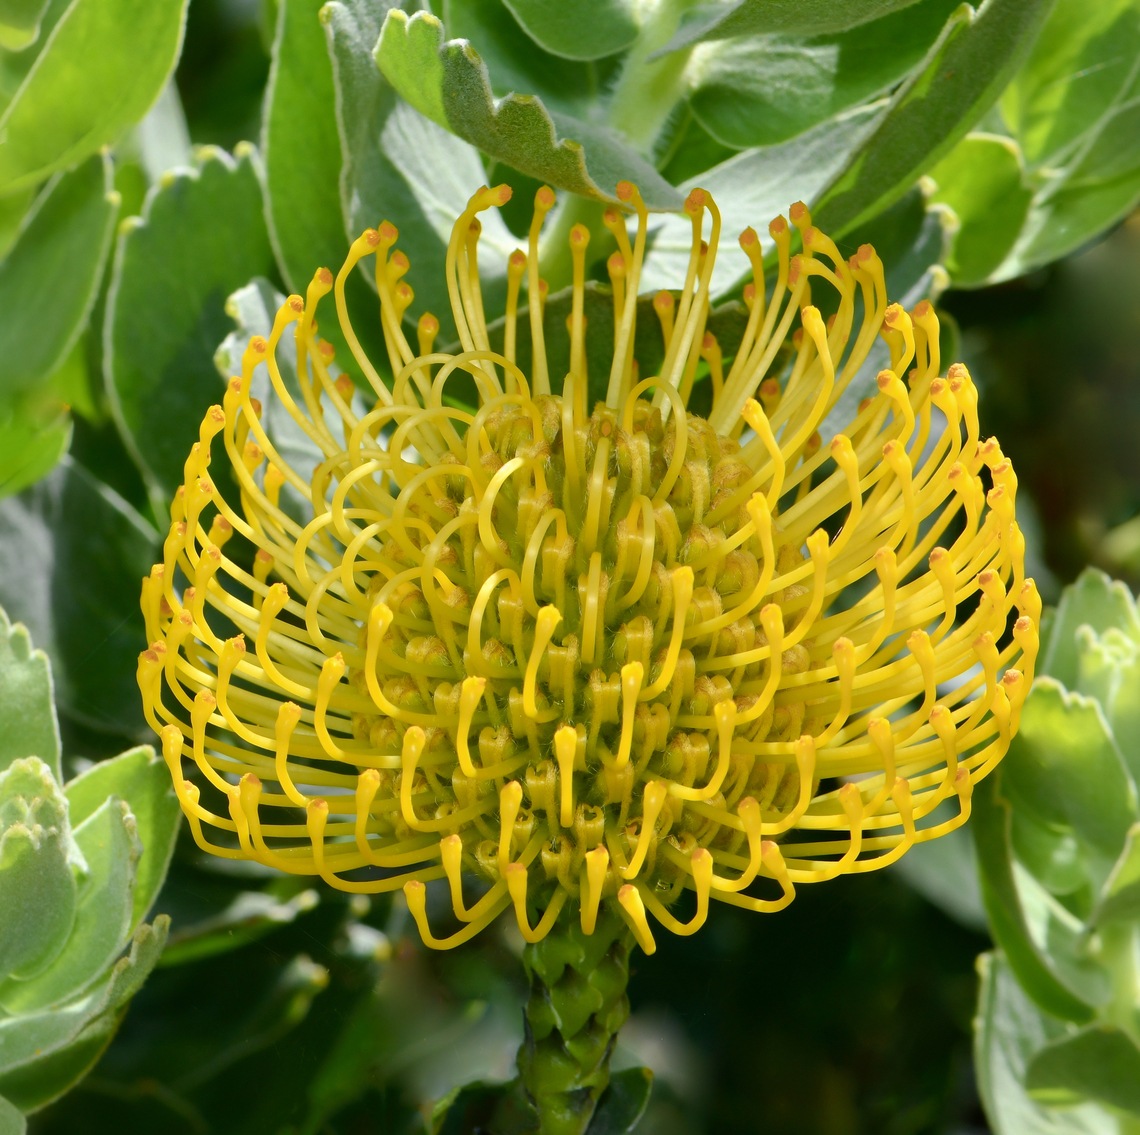 Gaismis, dar vadinamas pincushion protea, yra nuostabus augalas, kilęs iš Pietų Afrikos